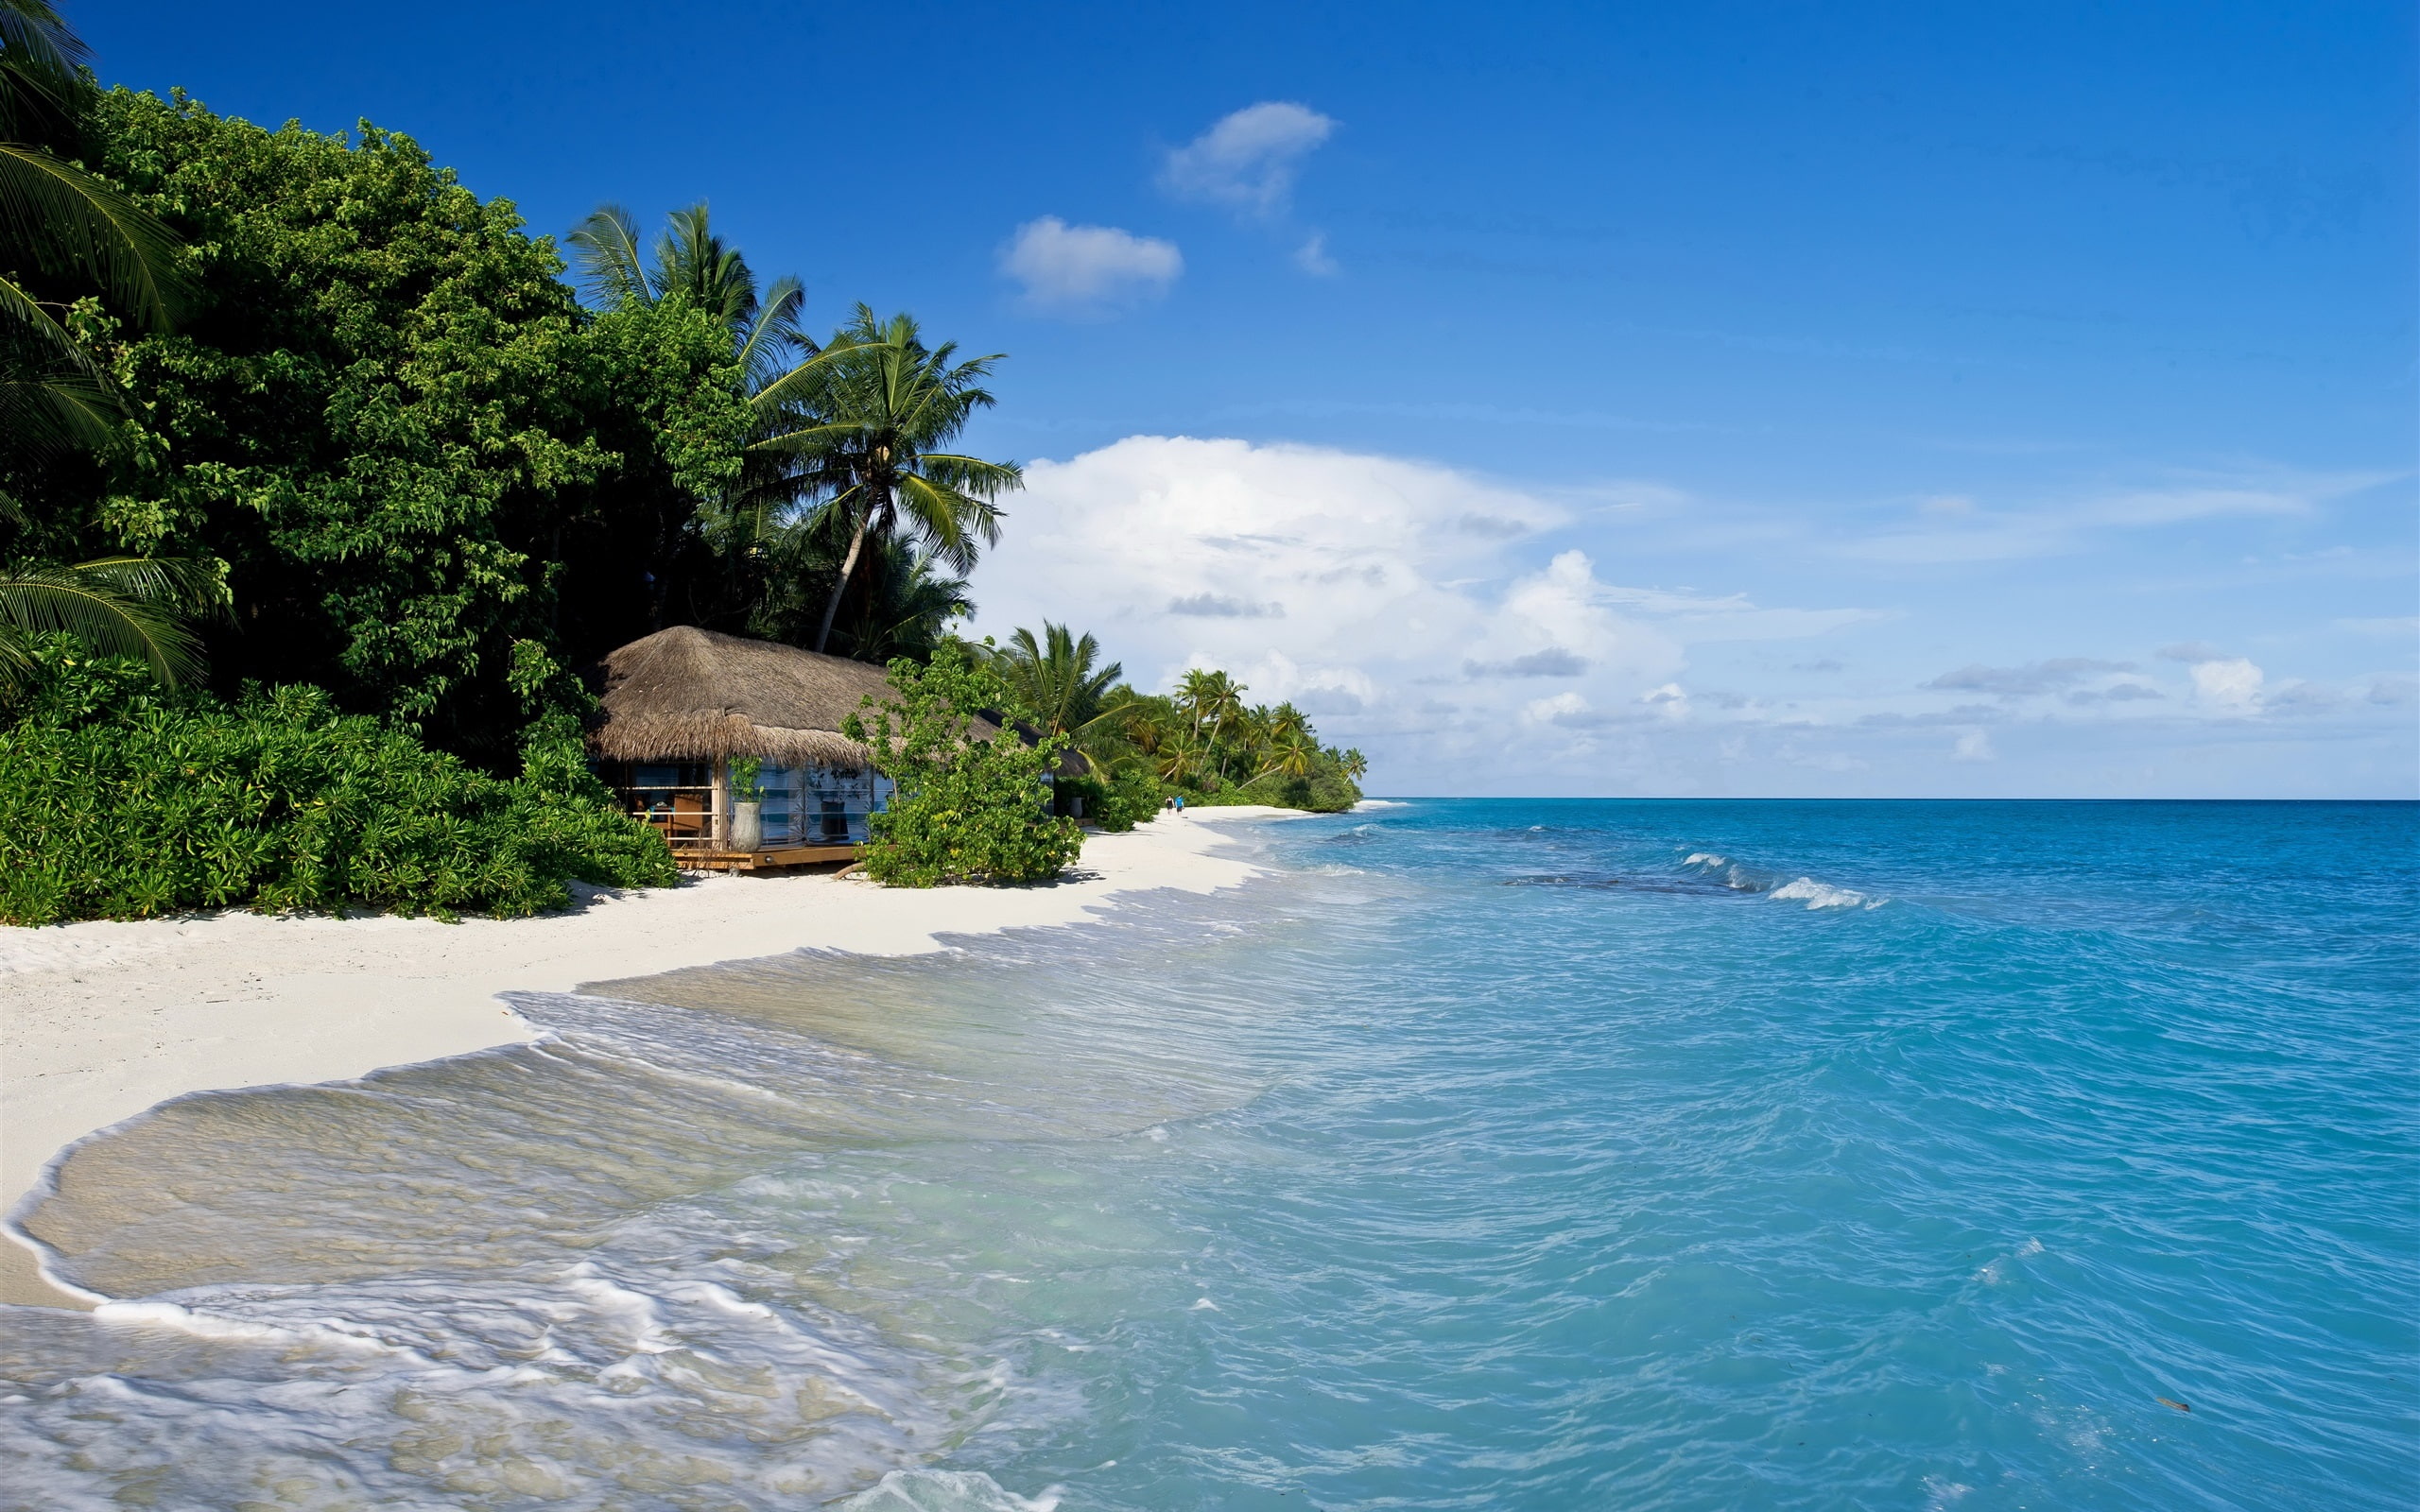 Maldives, tropical, sea, beach, palm trees, hut